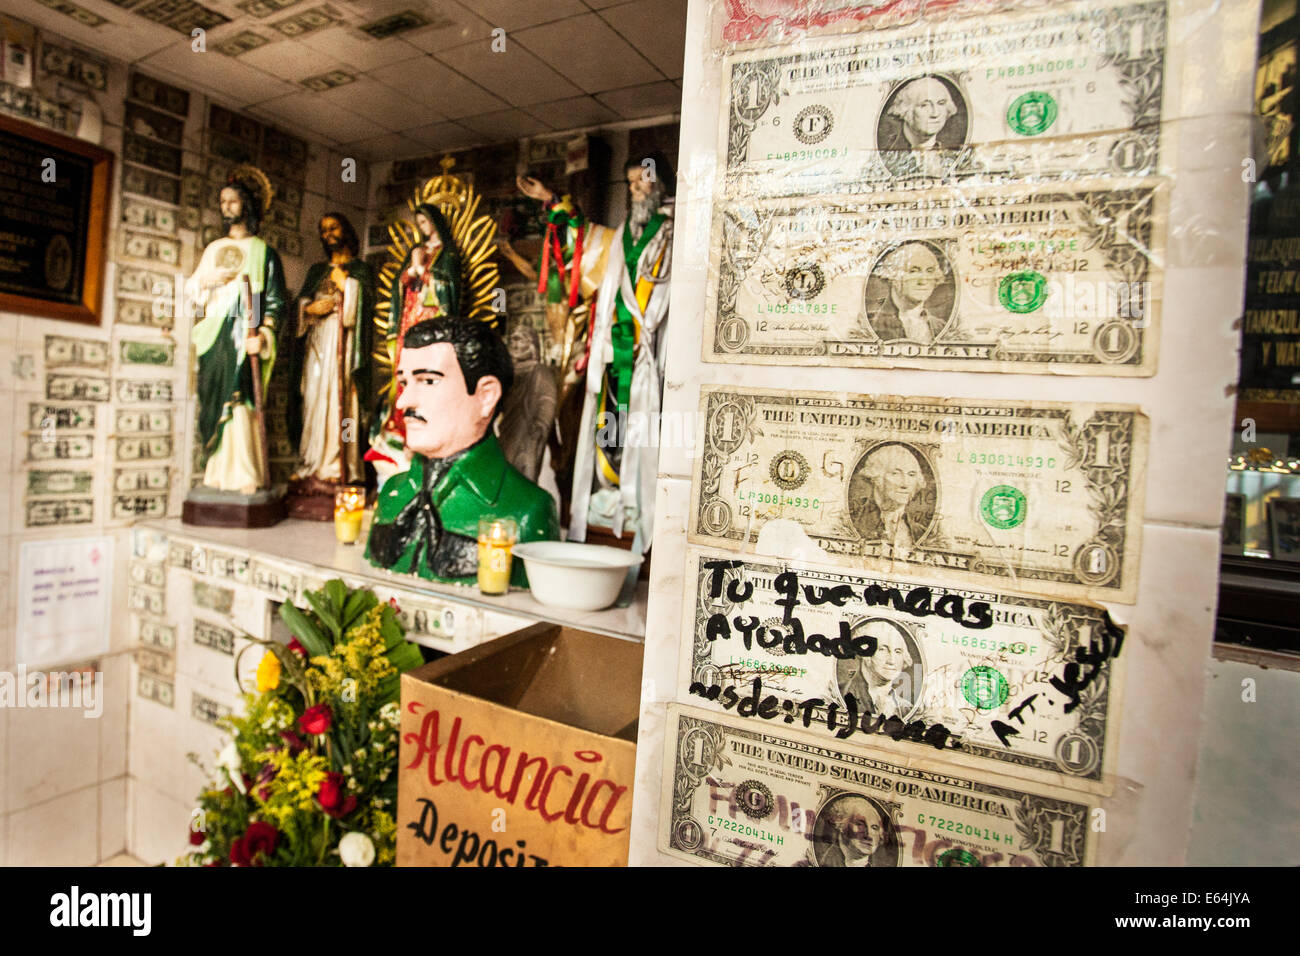 Le fatture del dollaro, uno con il messaggio 'è che ci hanno aiutato la maggior parte", coprire la parete di un santuario dedicato a Gesù Malverde in Messico. Foto Stock